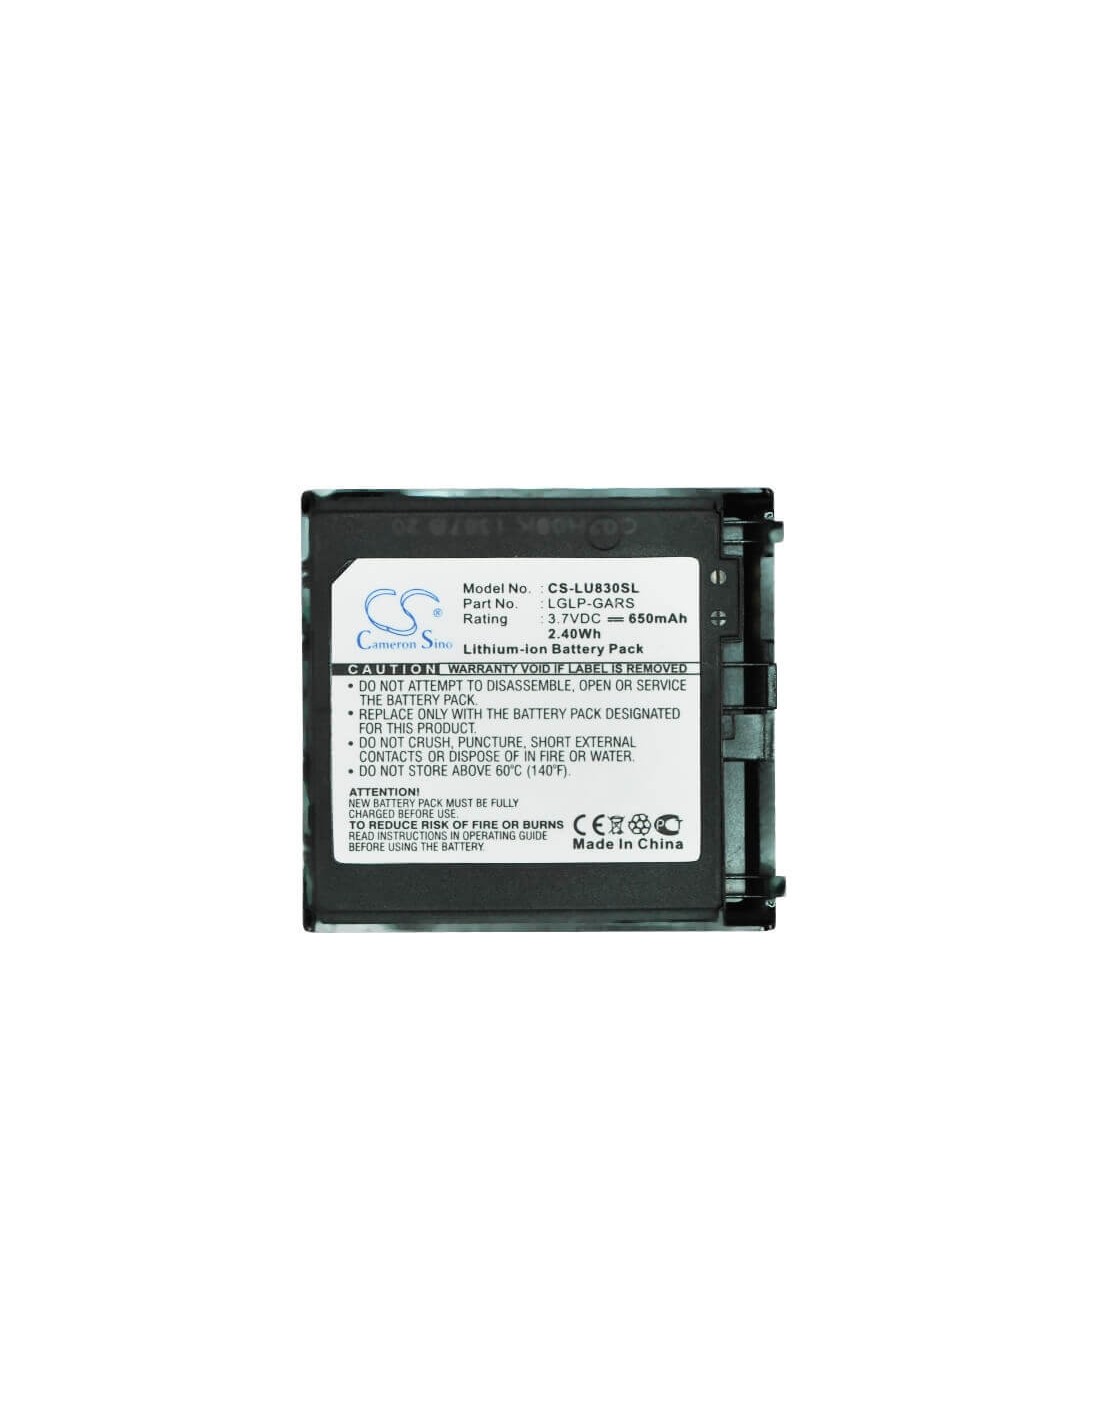 Battery for LG U830, U830C 3.7V, 650mAh - 2.41Wh